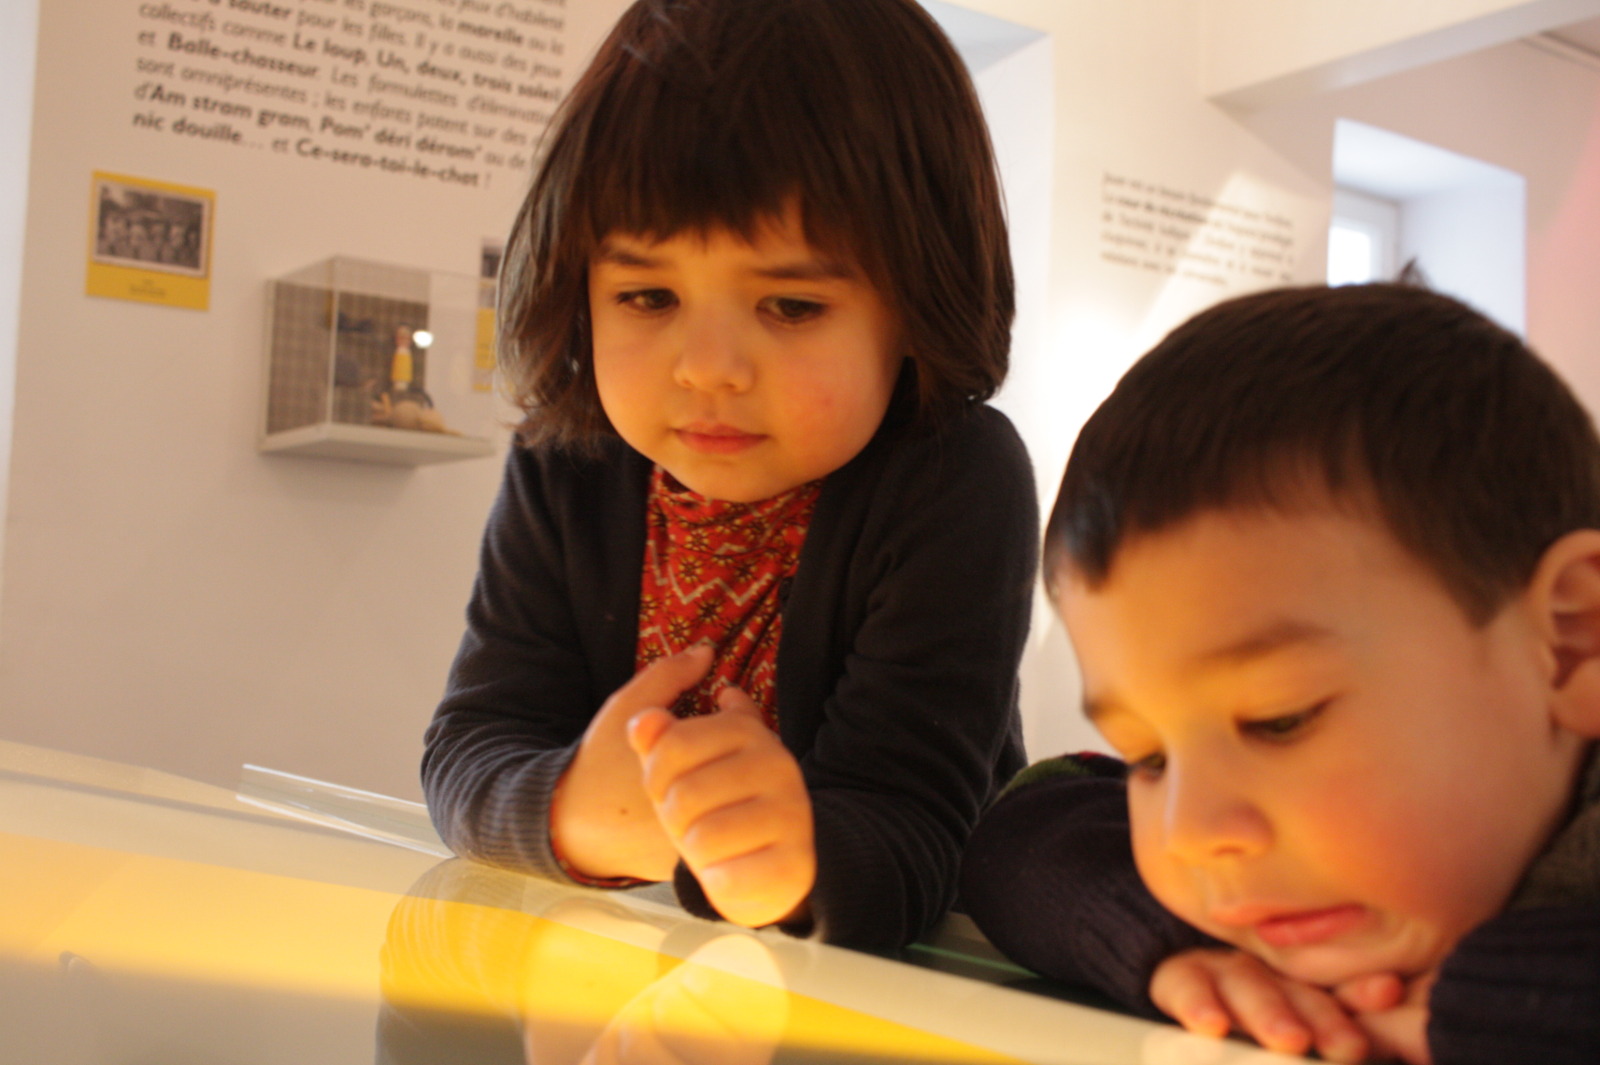 2 children look a lit panel at the Musée de la Grande Ardenne